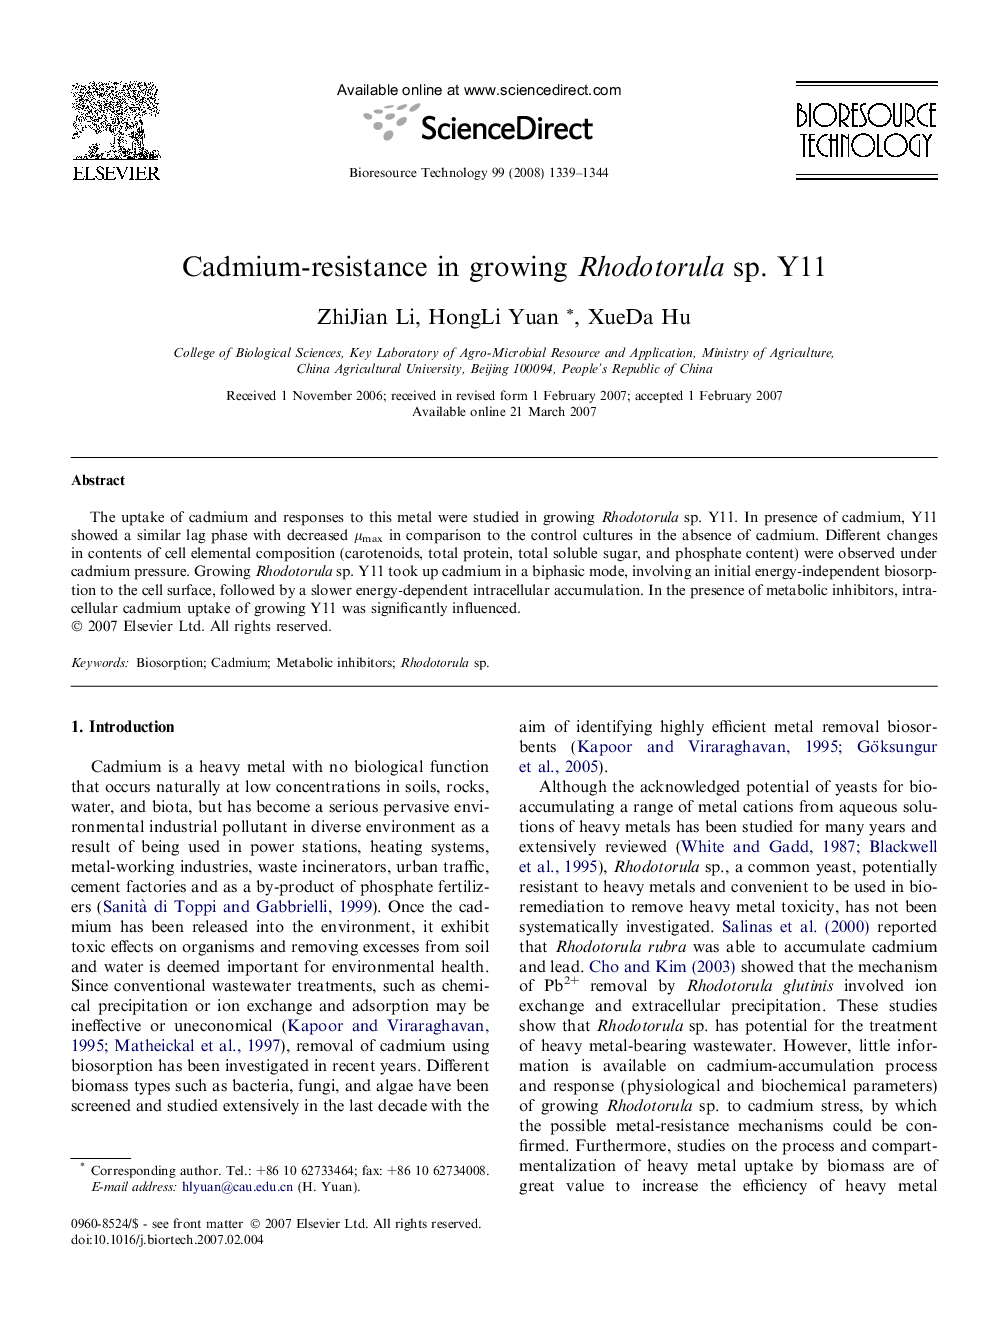 Cadmium-resistance in growing Rhodotorula sp. Y11